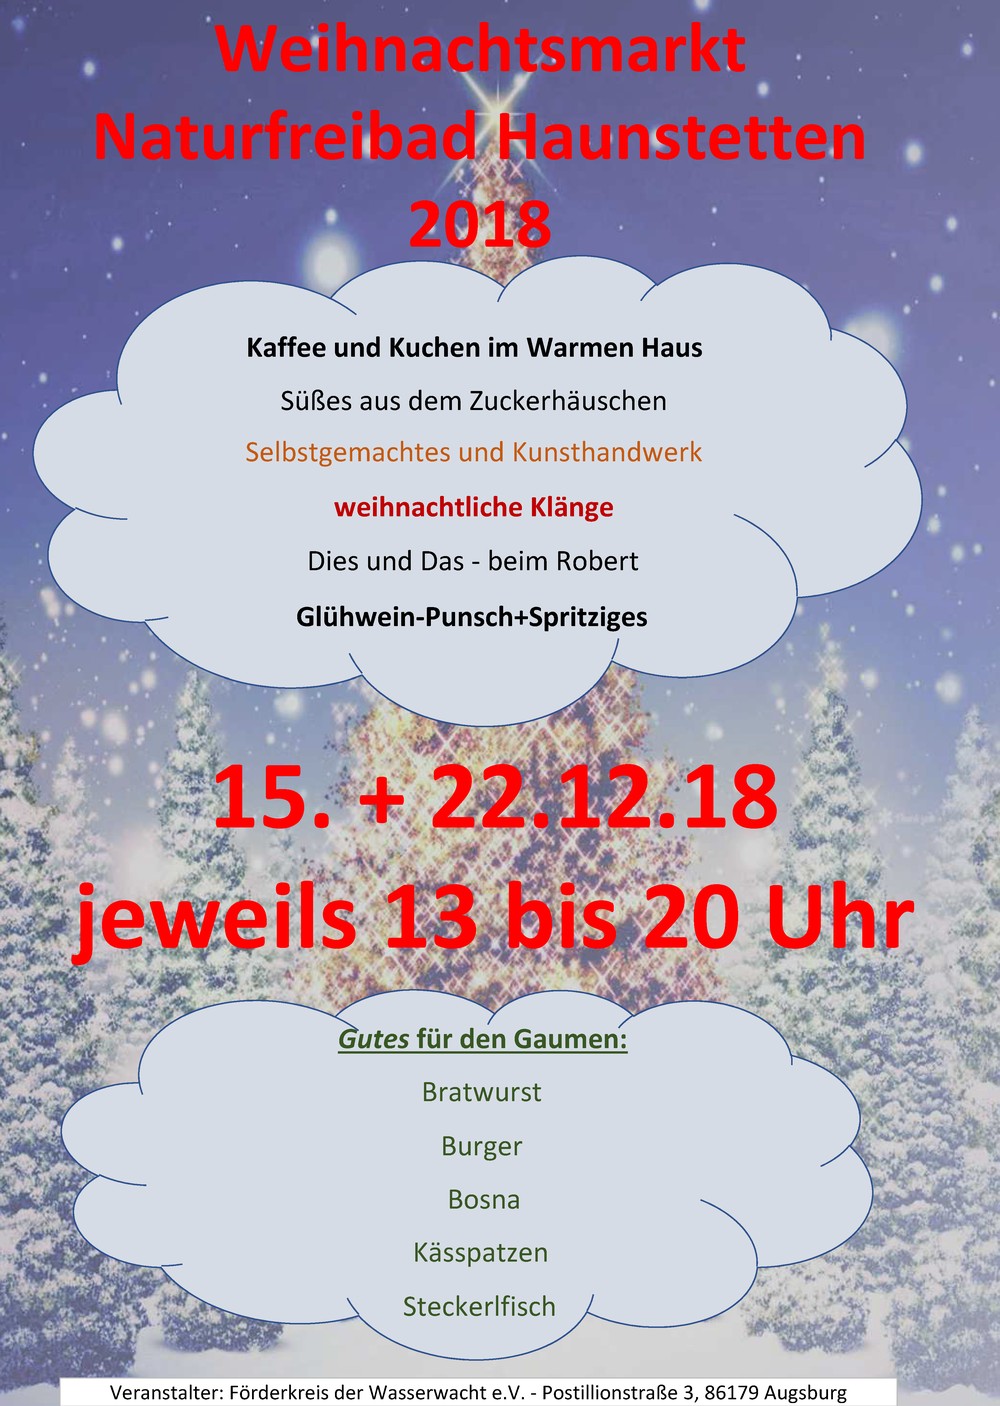 Weihnachtsmarkt im Naturfreibad Haunstetten 15. + 22. Dezember 2018